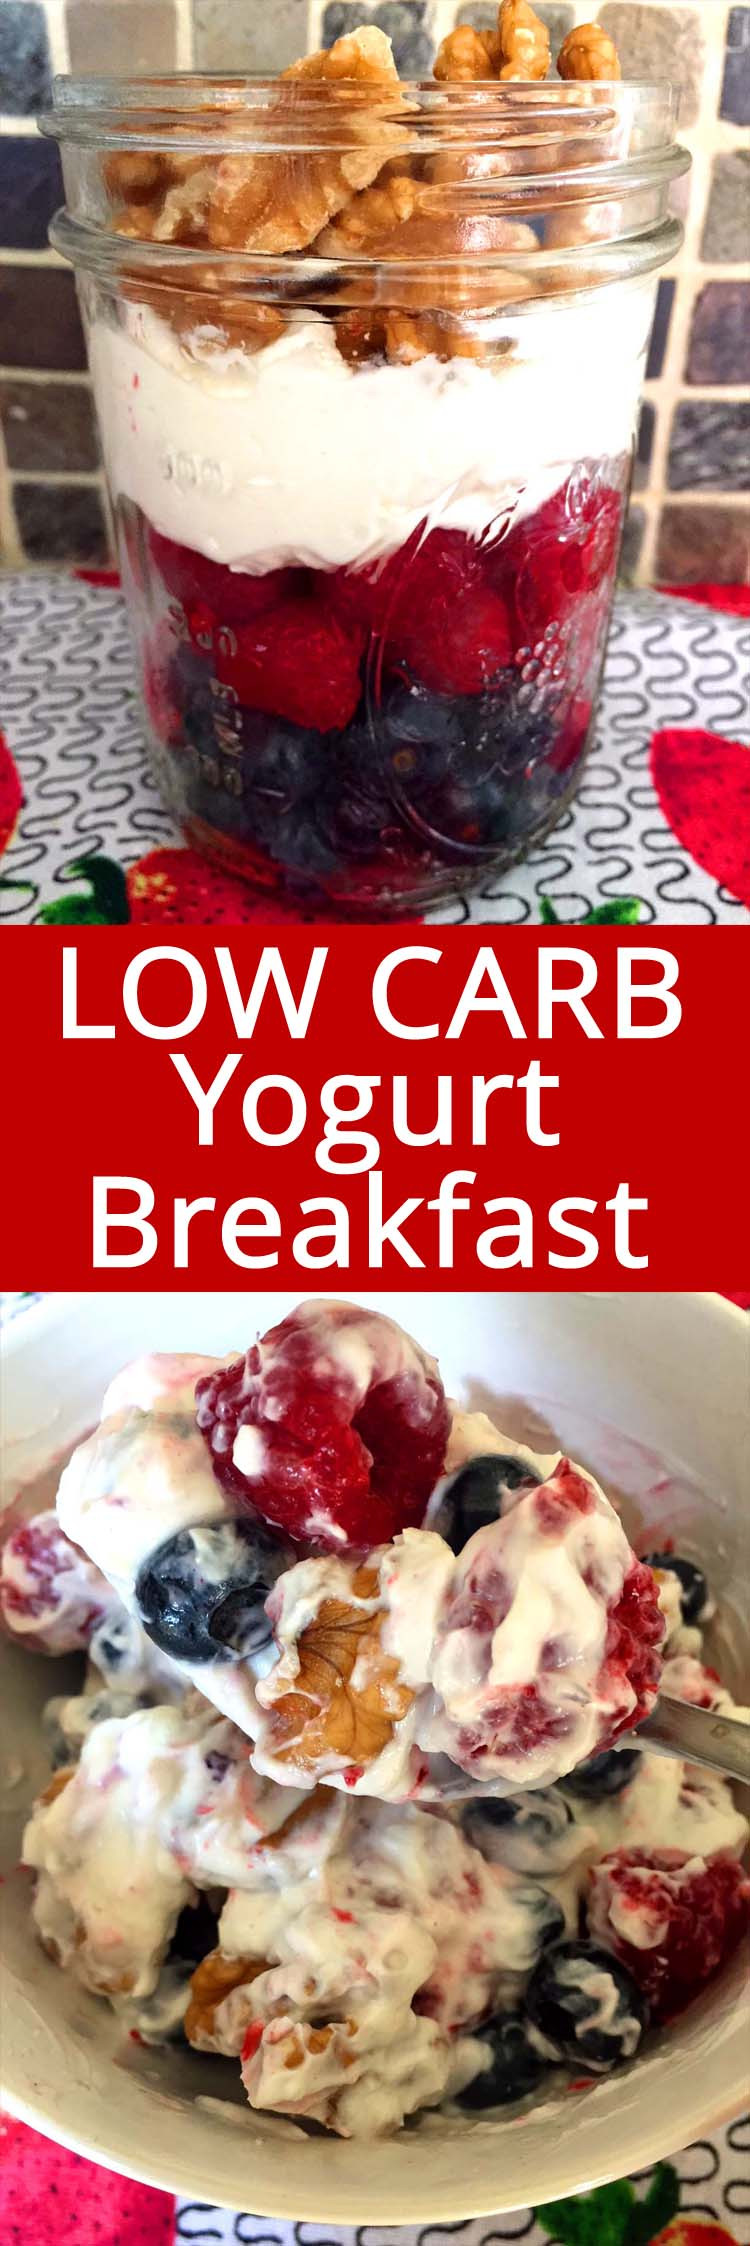 Yogurt On Keto Diet
 Low Carb Yogurt Breakfast With Berries And Nuts – Melanie